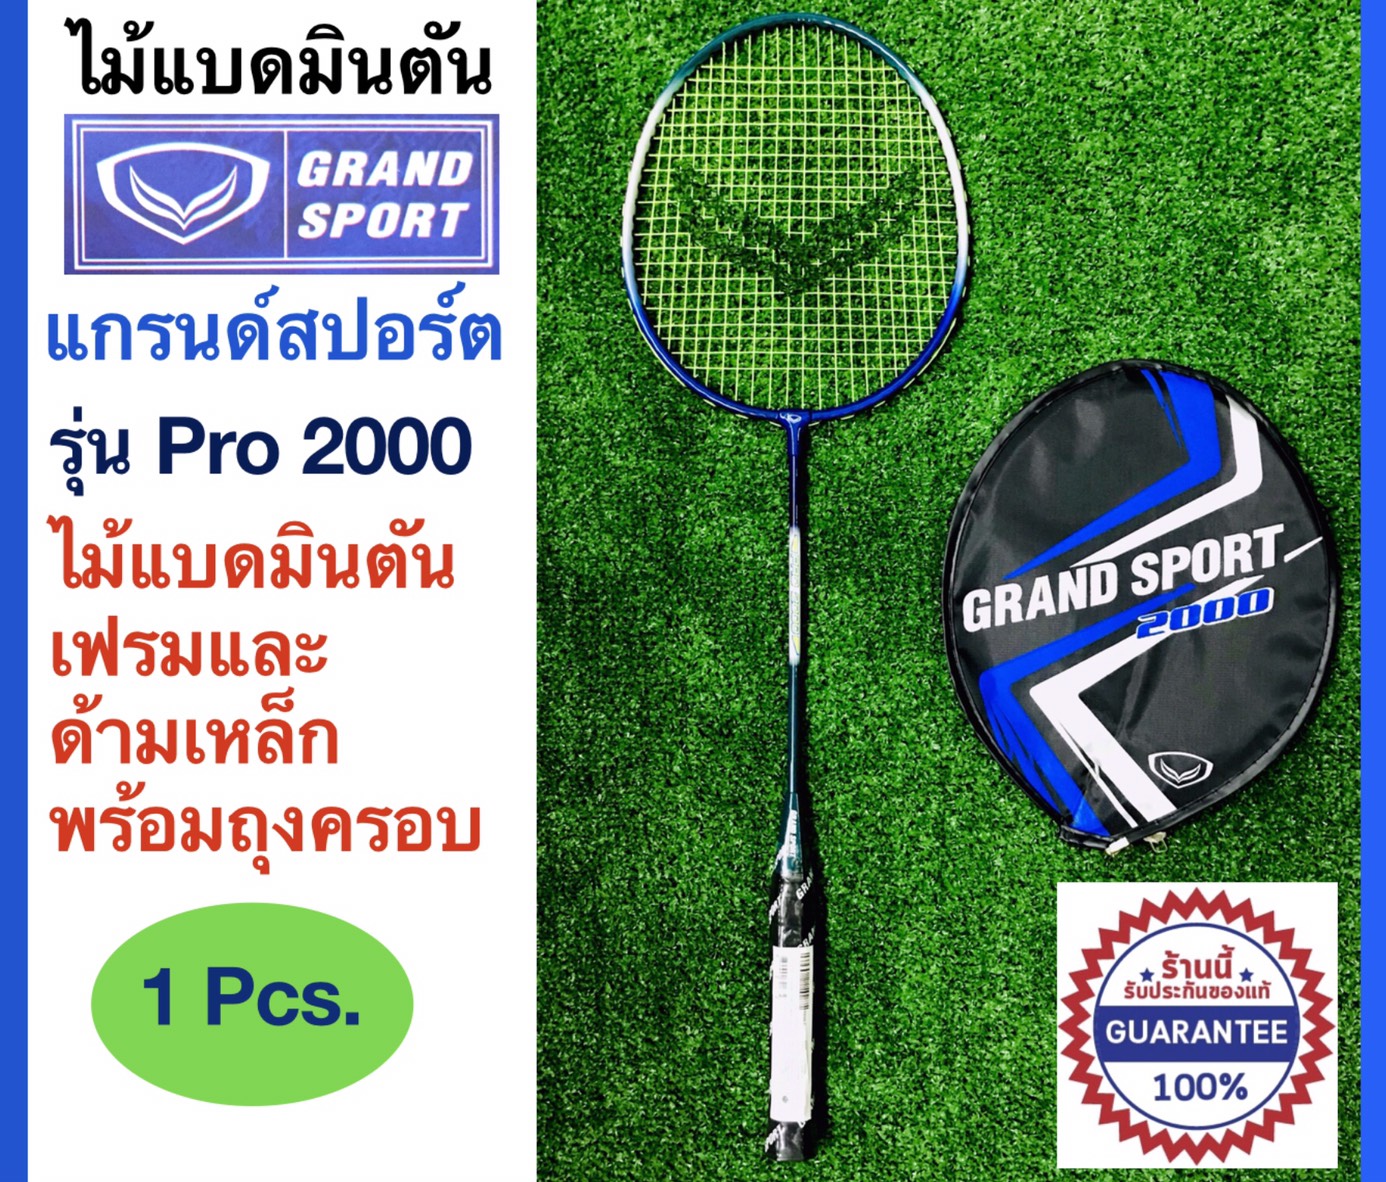 ข้อมูลเพิ่มเติมของ Grand Sport ไม้แบดมินตัน แกรนด์สปอร์ต Badminton racket รุ่น Pro 2000  พร้อมถุงครอบเพื่อรักษาเอ็นแบด